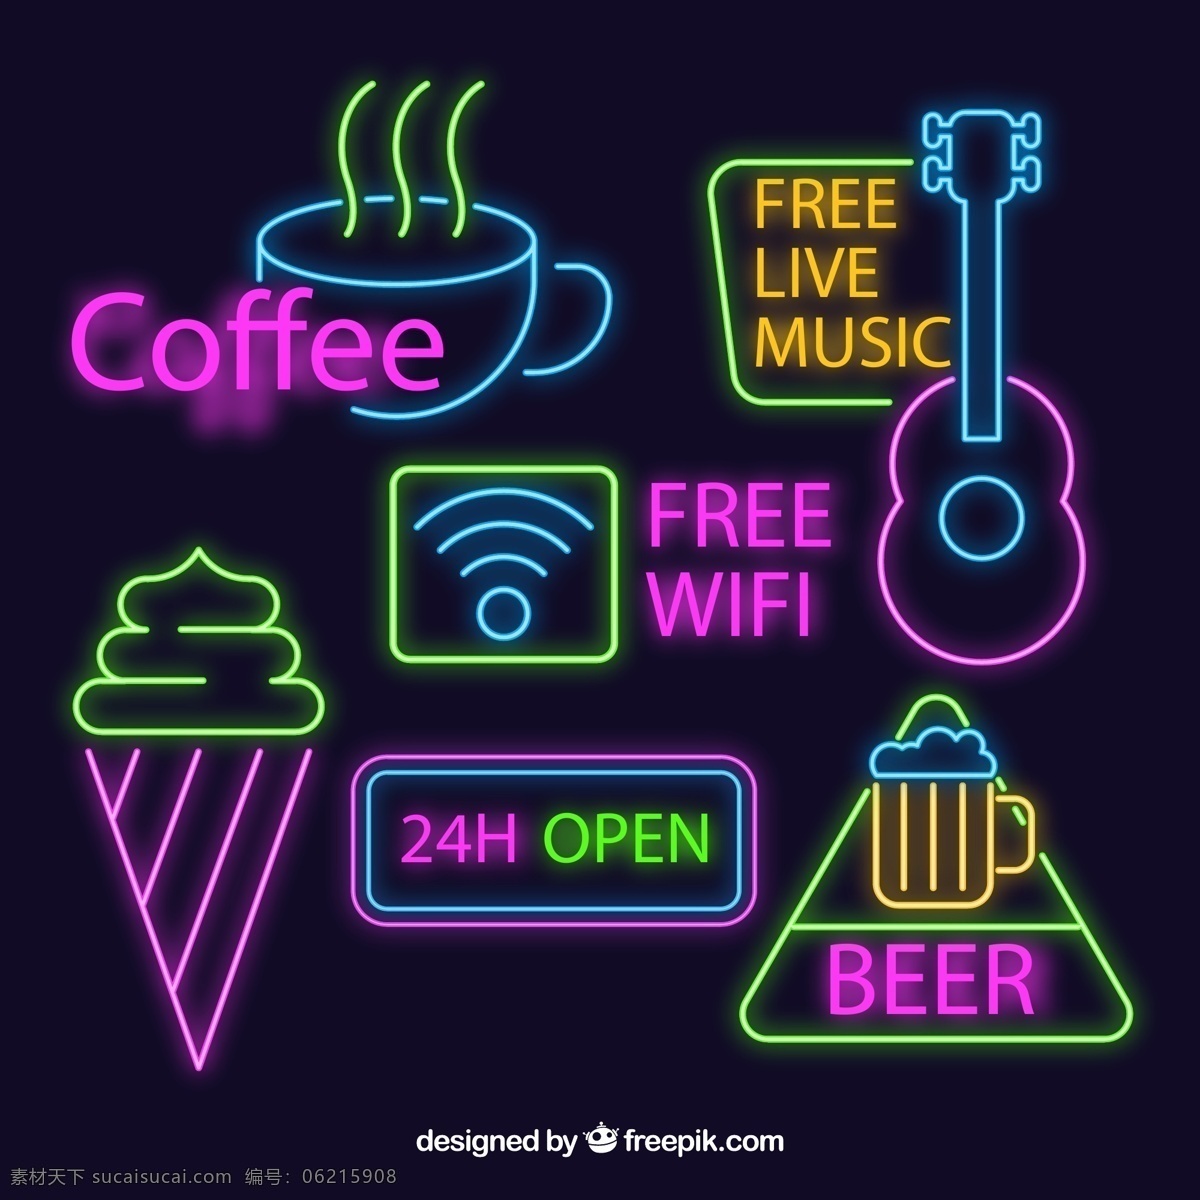 彩色 霓虹灯 招牌 咖啡店 冰淇淋 无线网络 小时营业 酒吧 矢量 高清图片